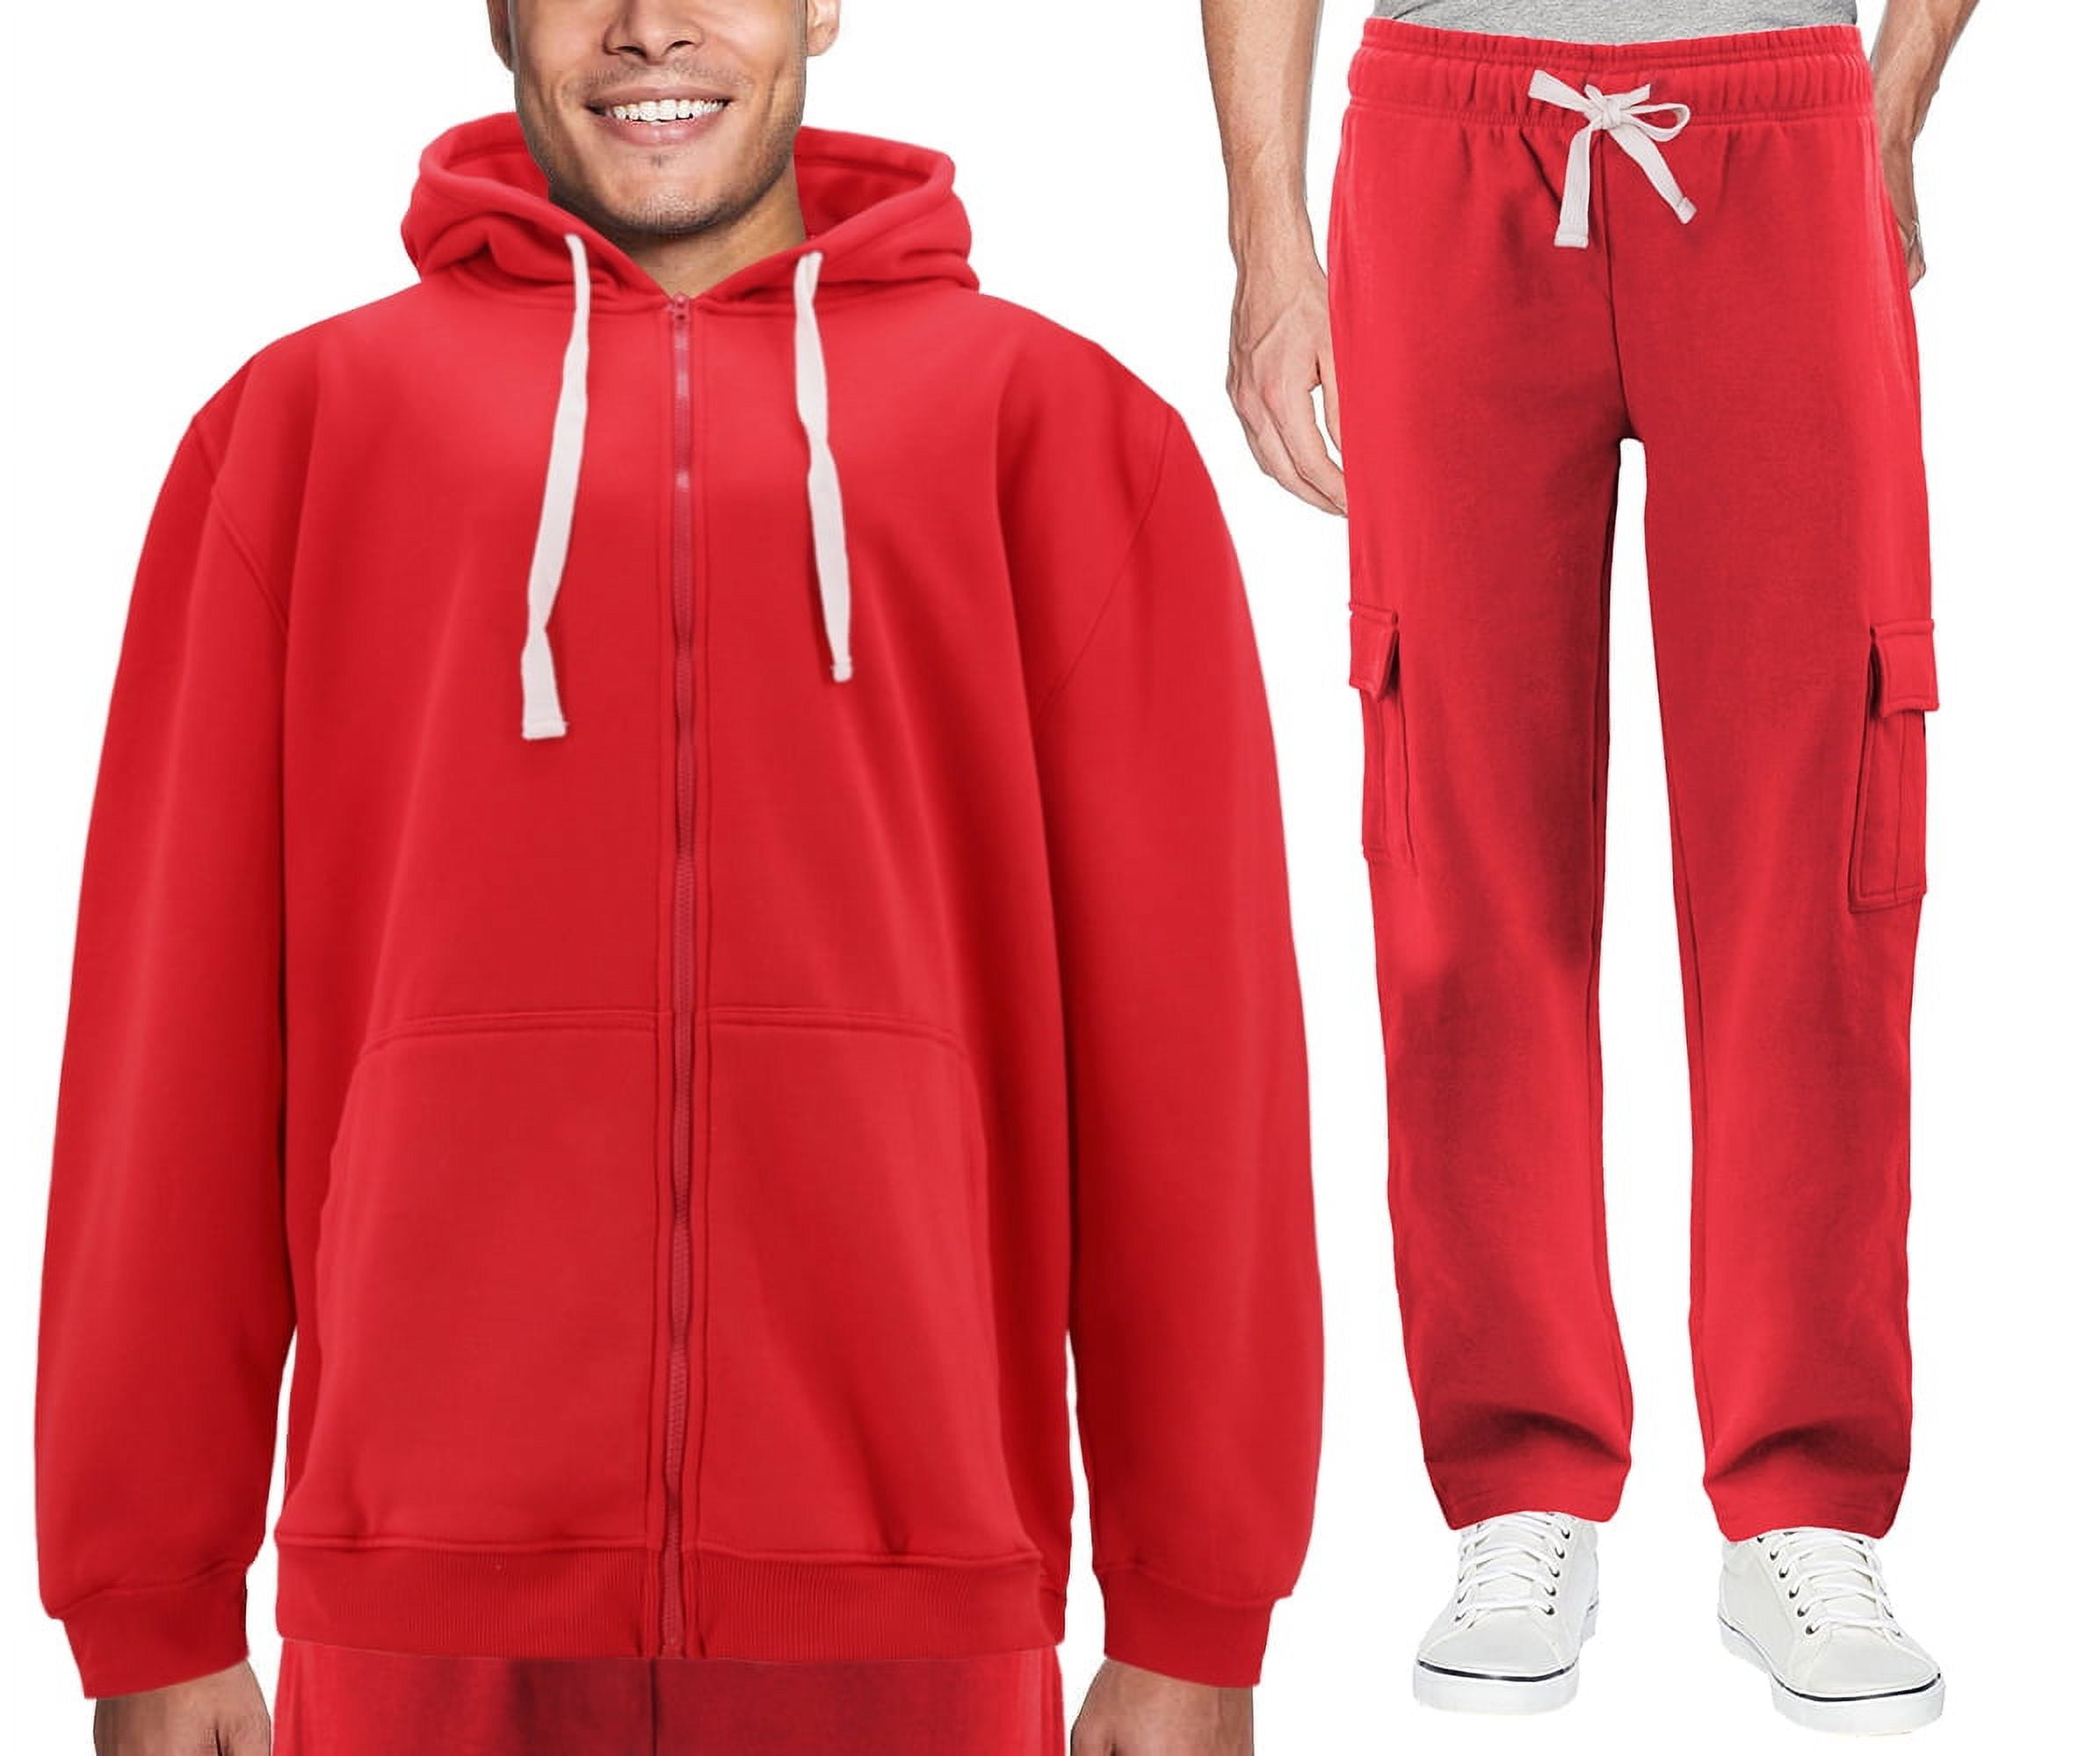 Men's Zip Up Fleece Sports Gym Athletic Jogging Track Sweat Suit 2 Piece  Set (Orange, 5XL) 